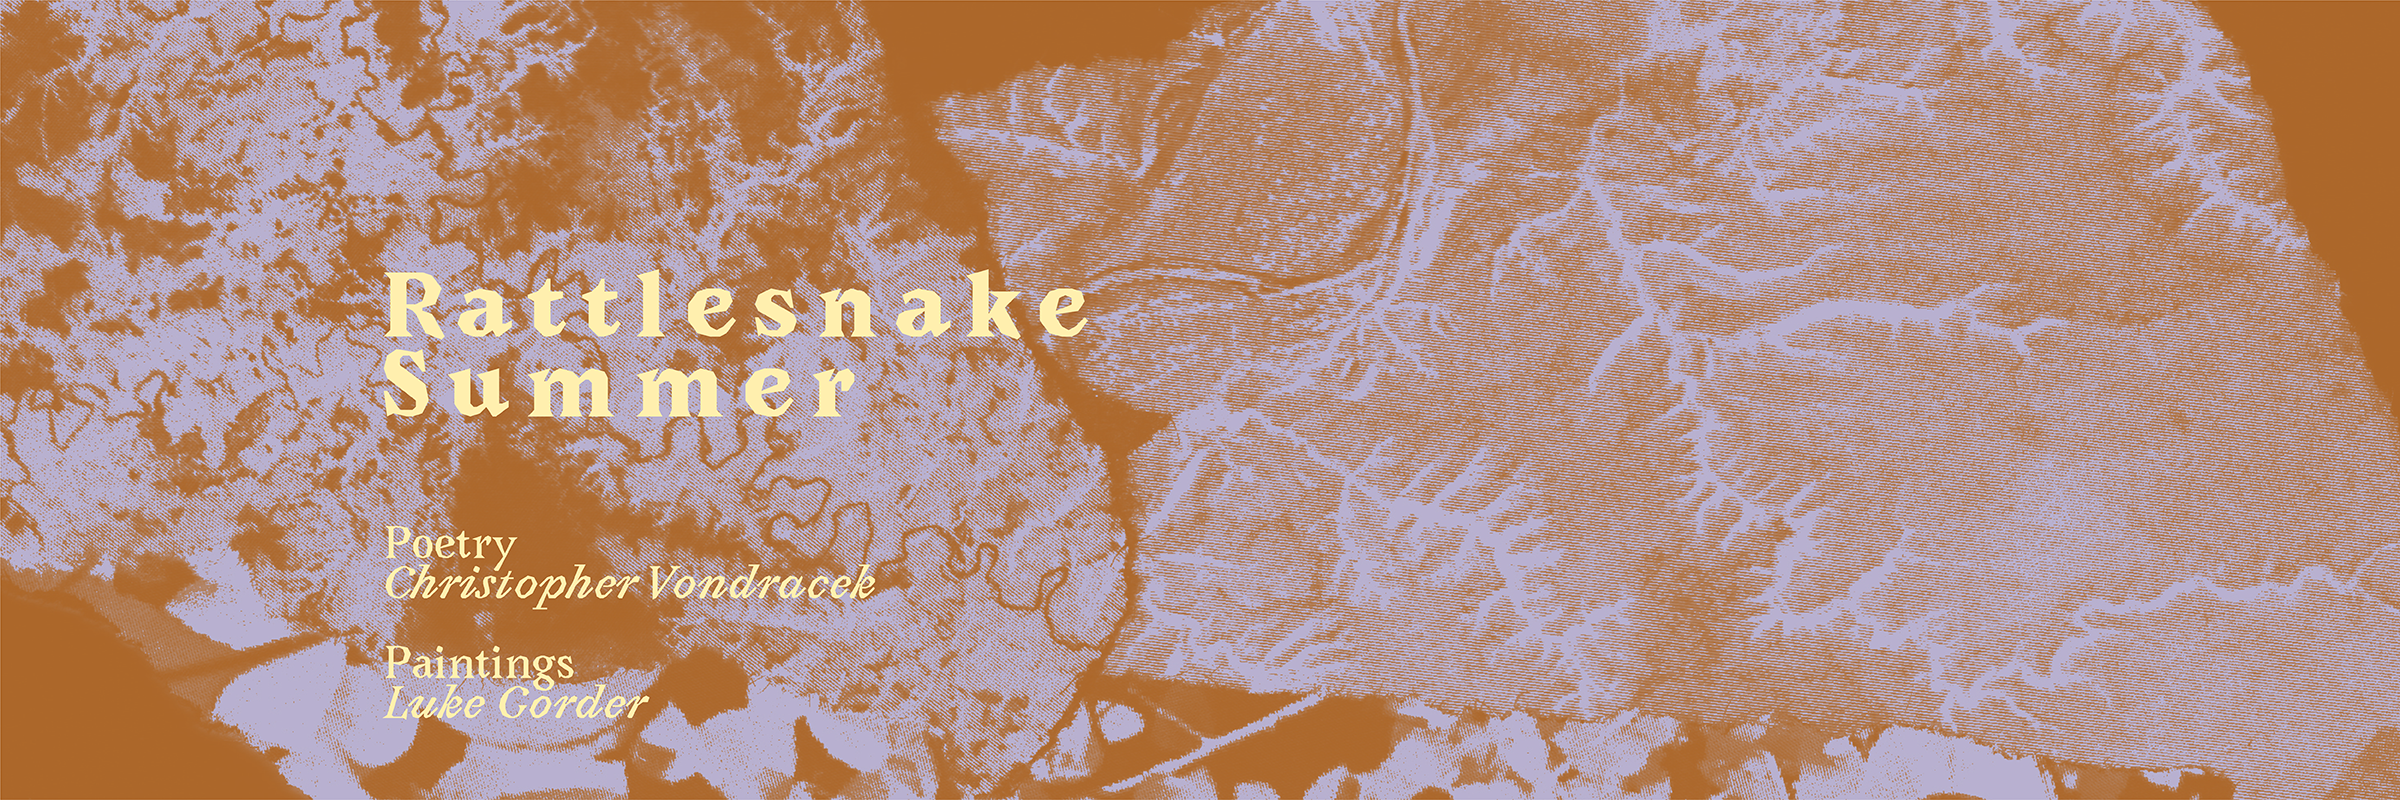 Rattlesnake Summer